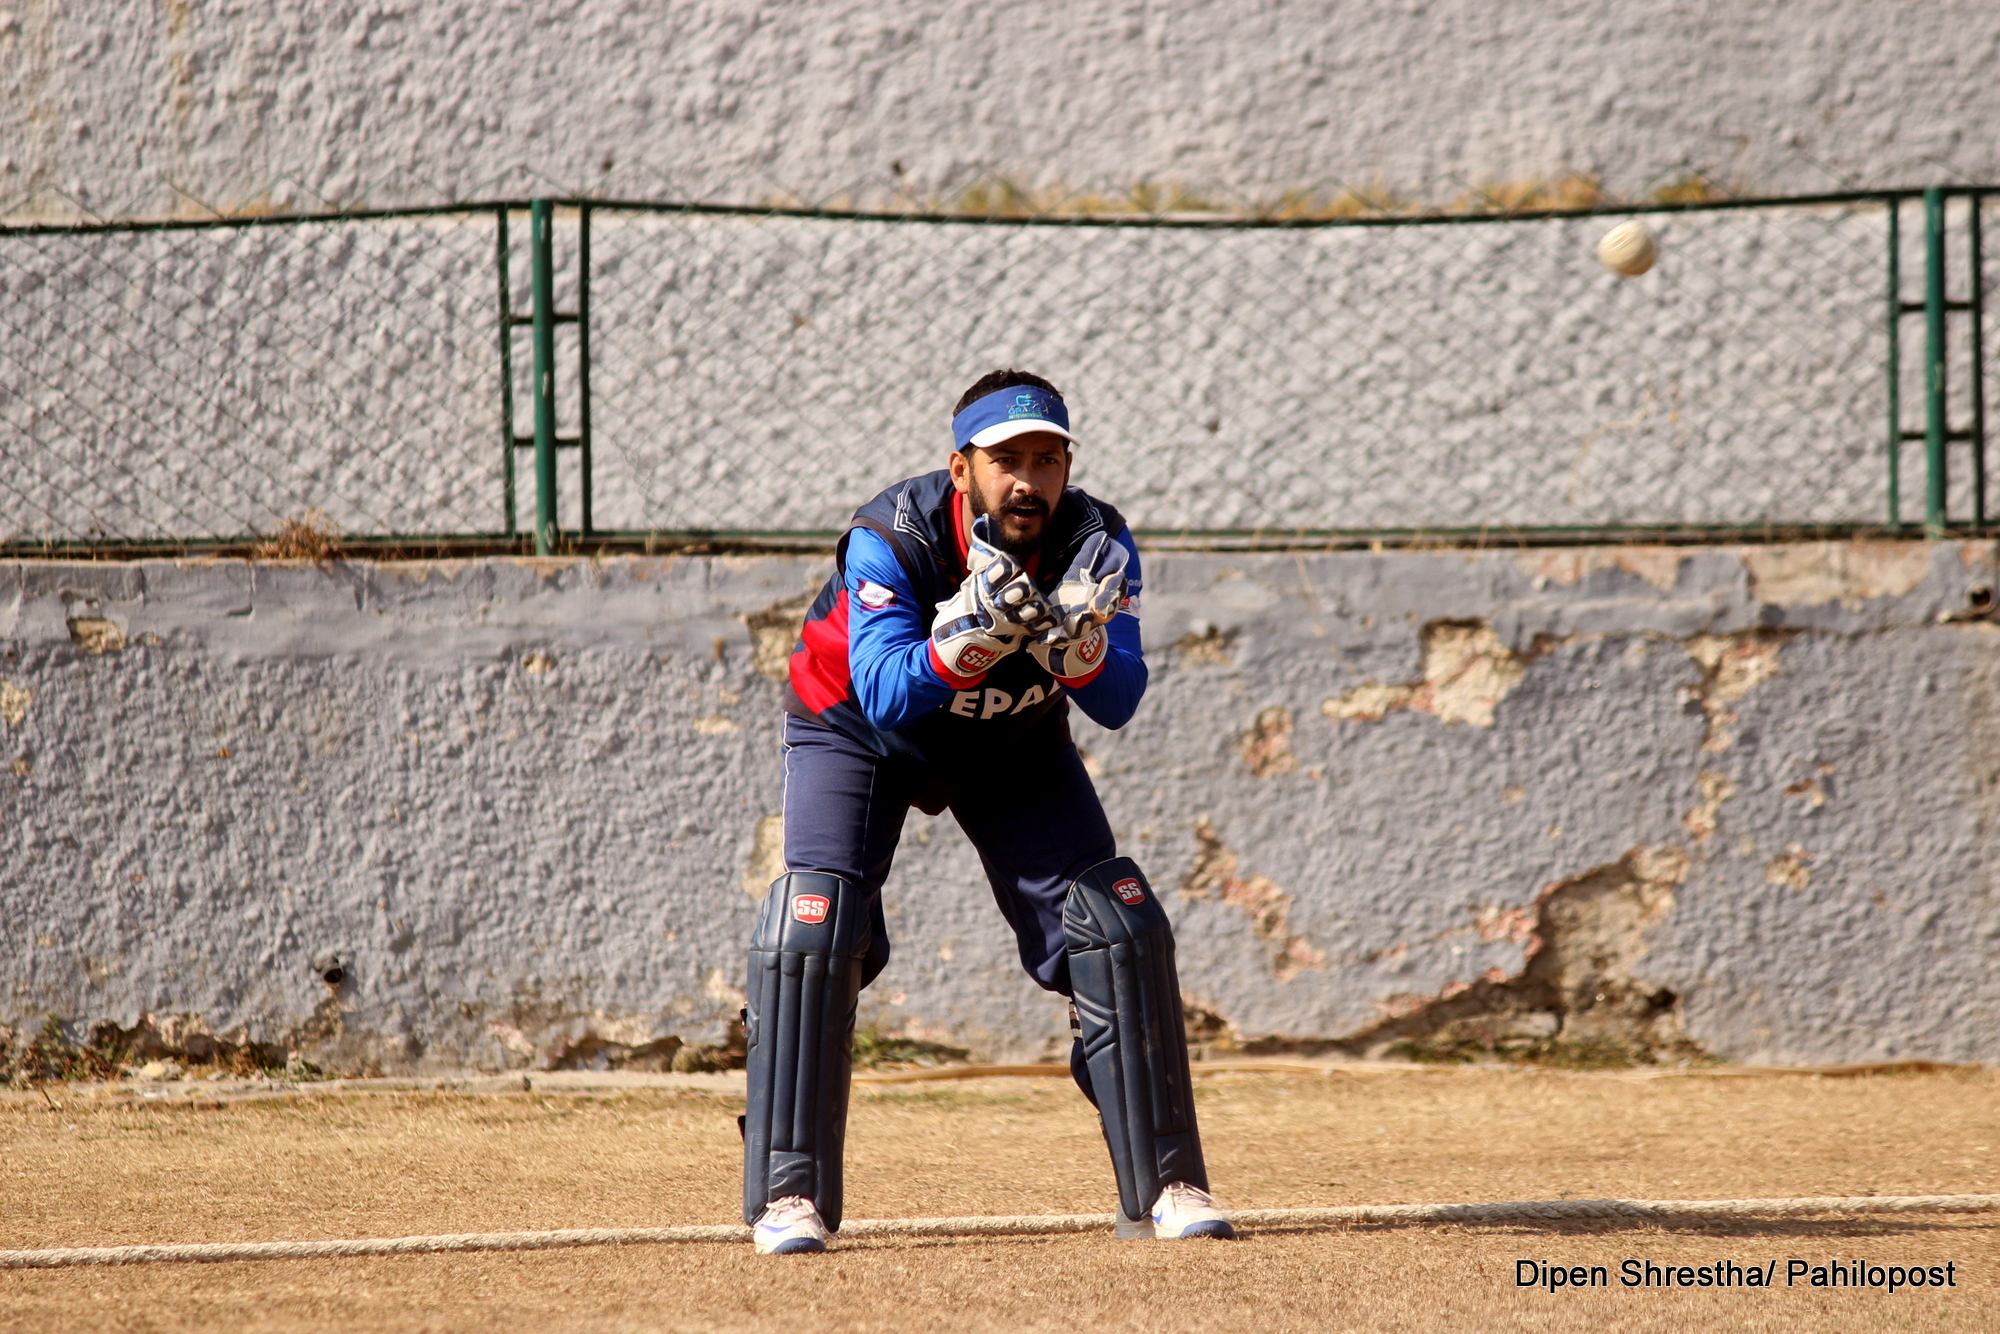 युरोप टुरका लागि नेपाली क्रिकेट टोली घोषणा, ३ वर्षपछि सुवास खकुरेलको पुनरागमन